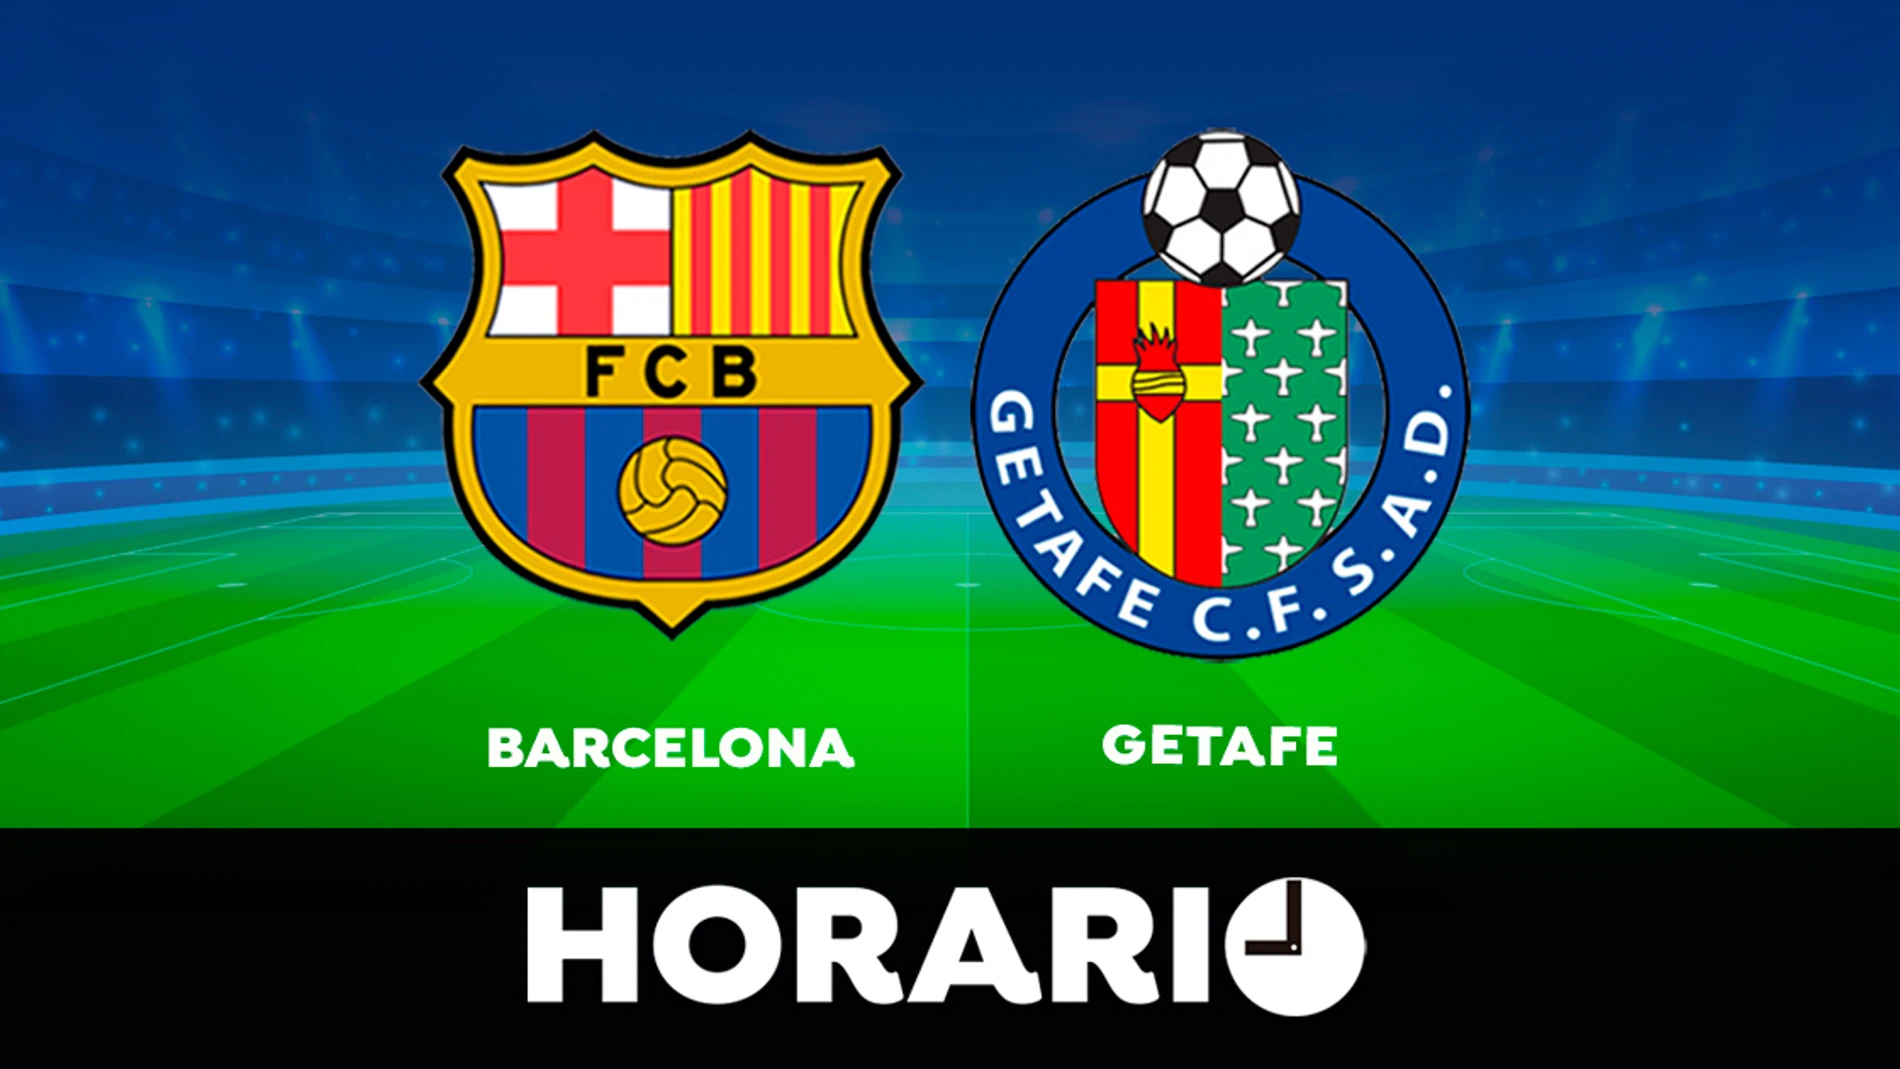 Barcelona - Getafe: Horario y dónde ver el partido de LaLiga en directo